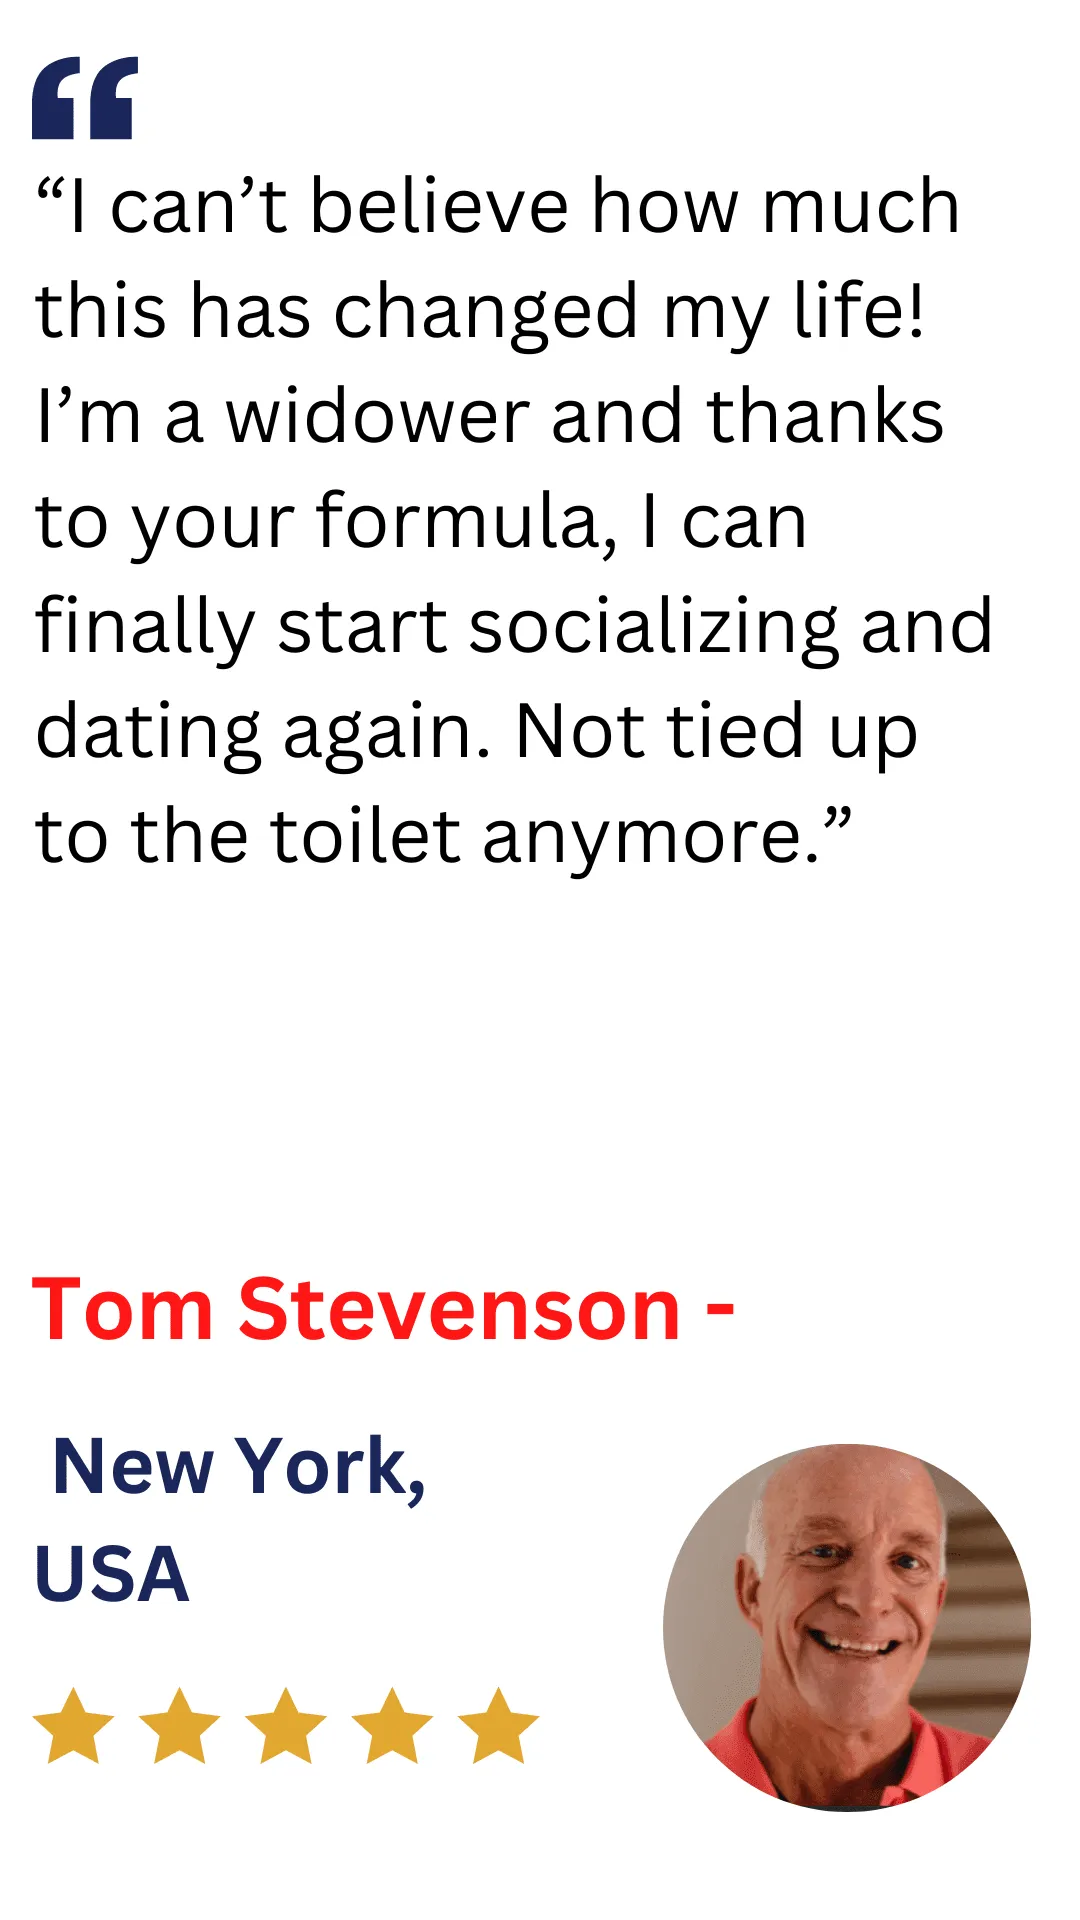 Tom Stevenson